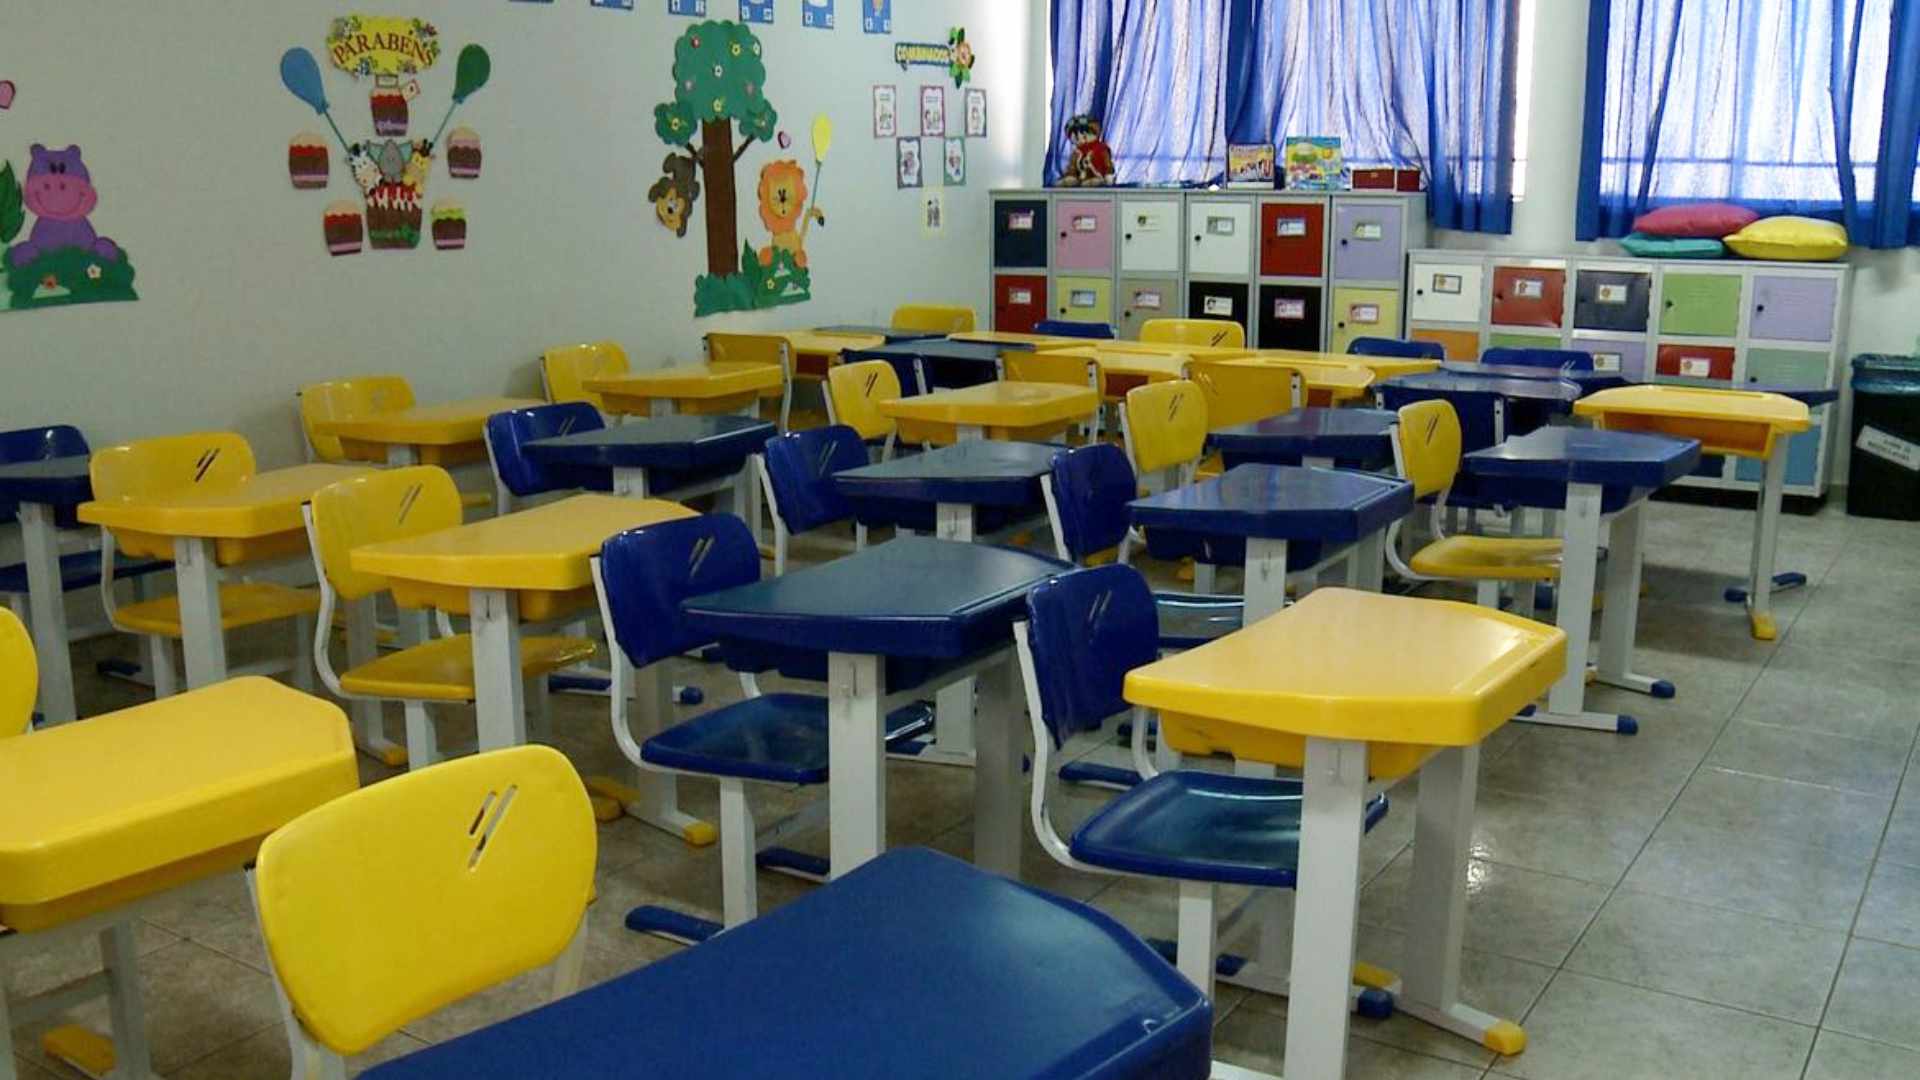 Preço da mensalidade escolar varia até 275% em Campo Grande, aponta pesquisa